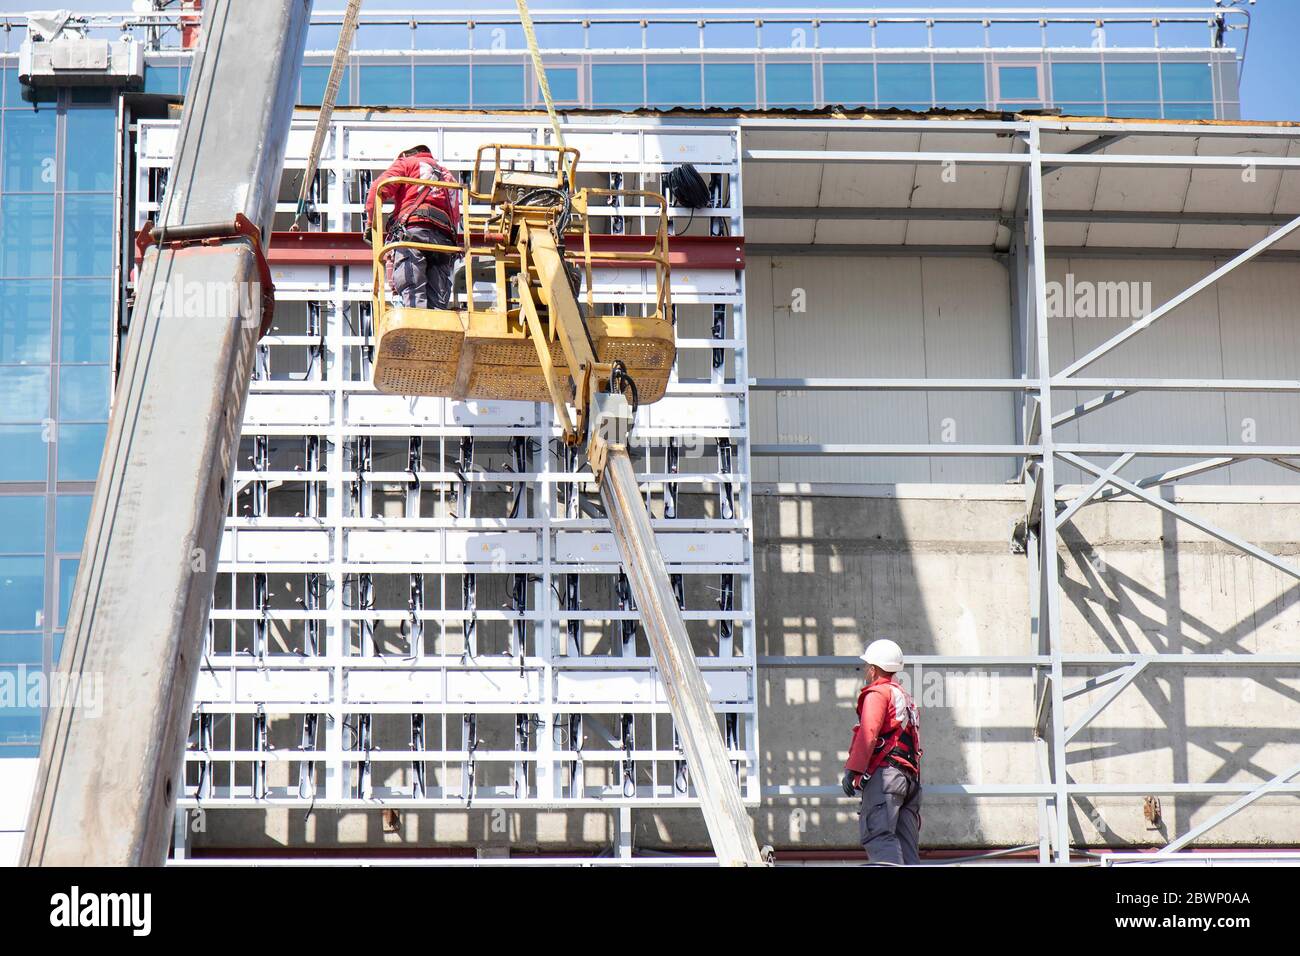 Belgrade, Serbie - 6 mai 2020: Ouvriers de la construction dans un panier de grue en installant une structure métallique de revêtement externe sur un mur de façade de bâtiment Banque D'Images